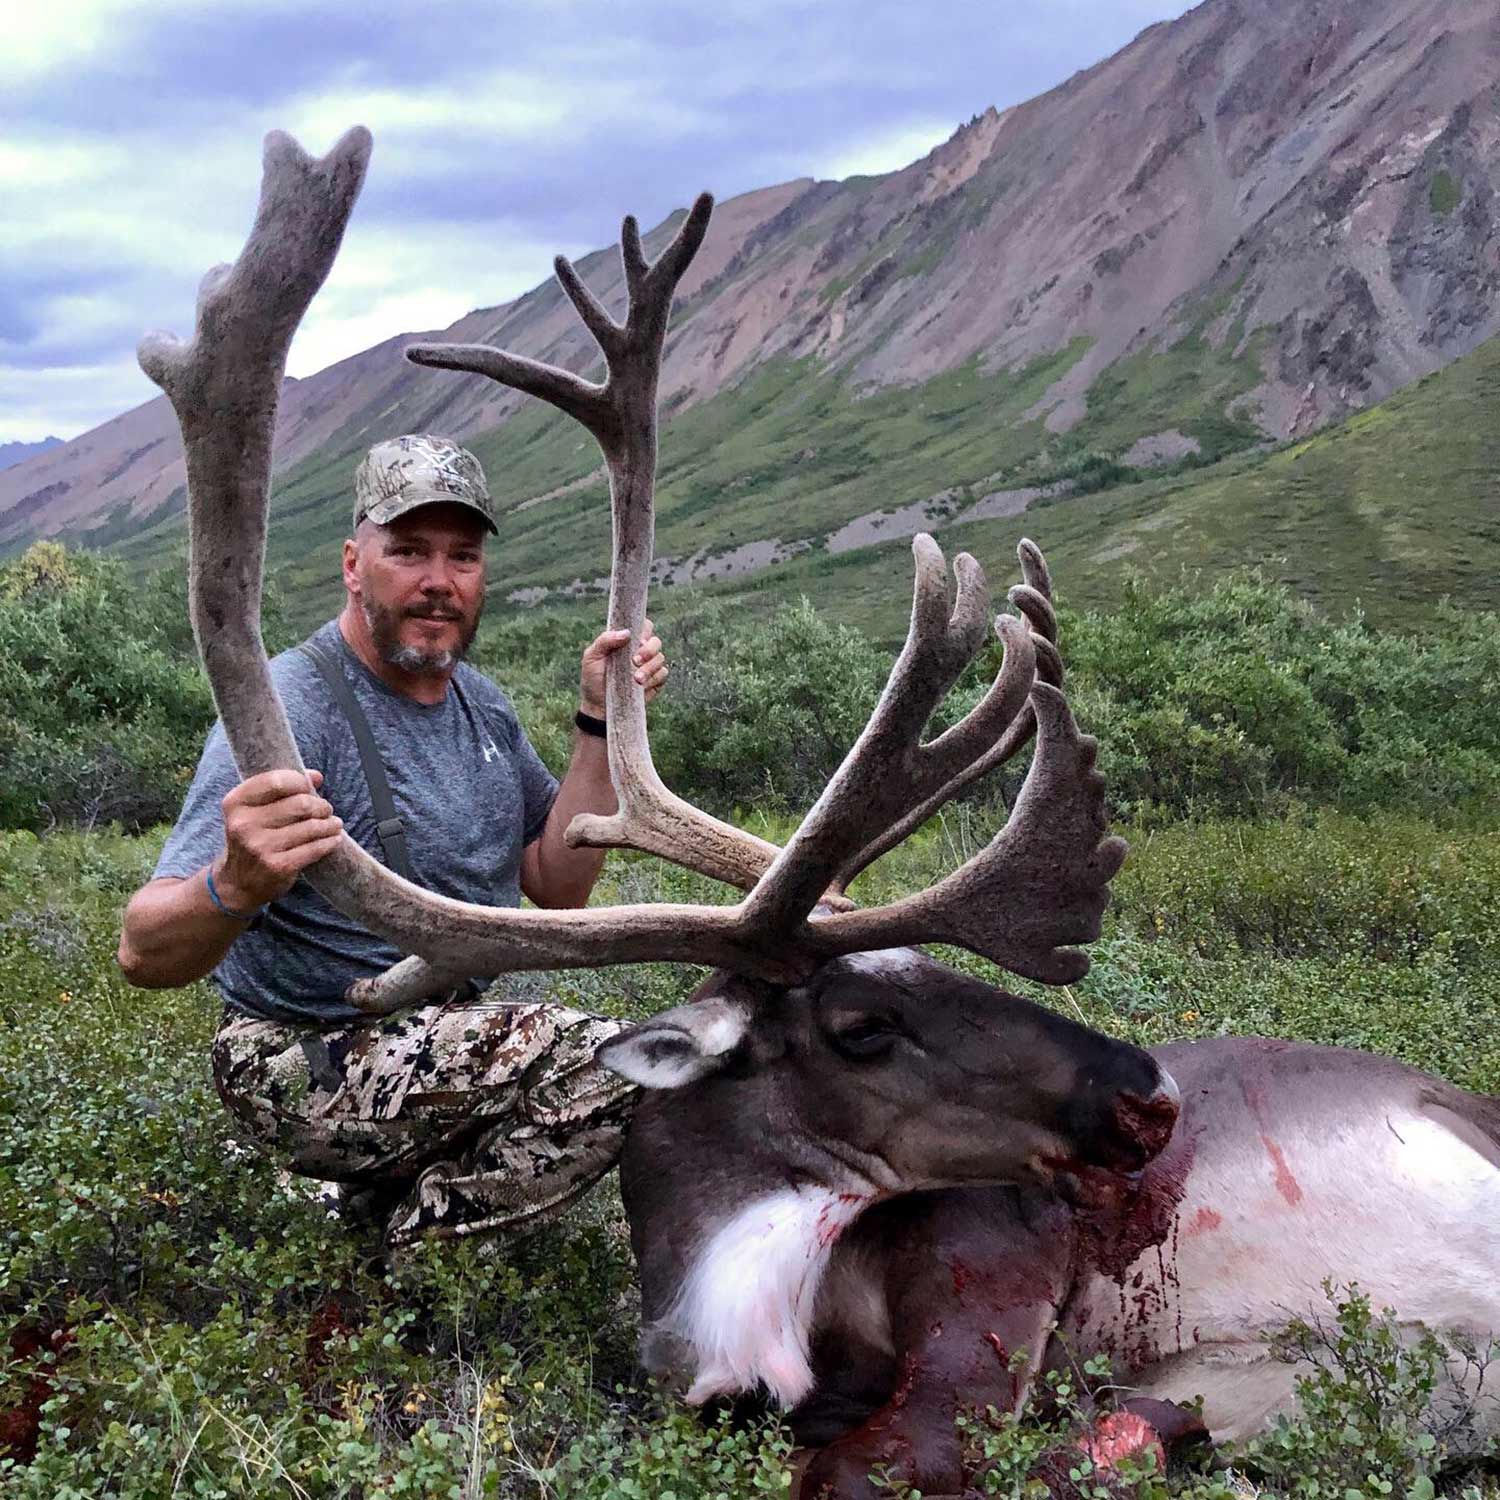 hunting trips in alaska